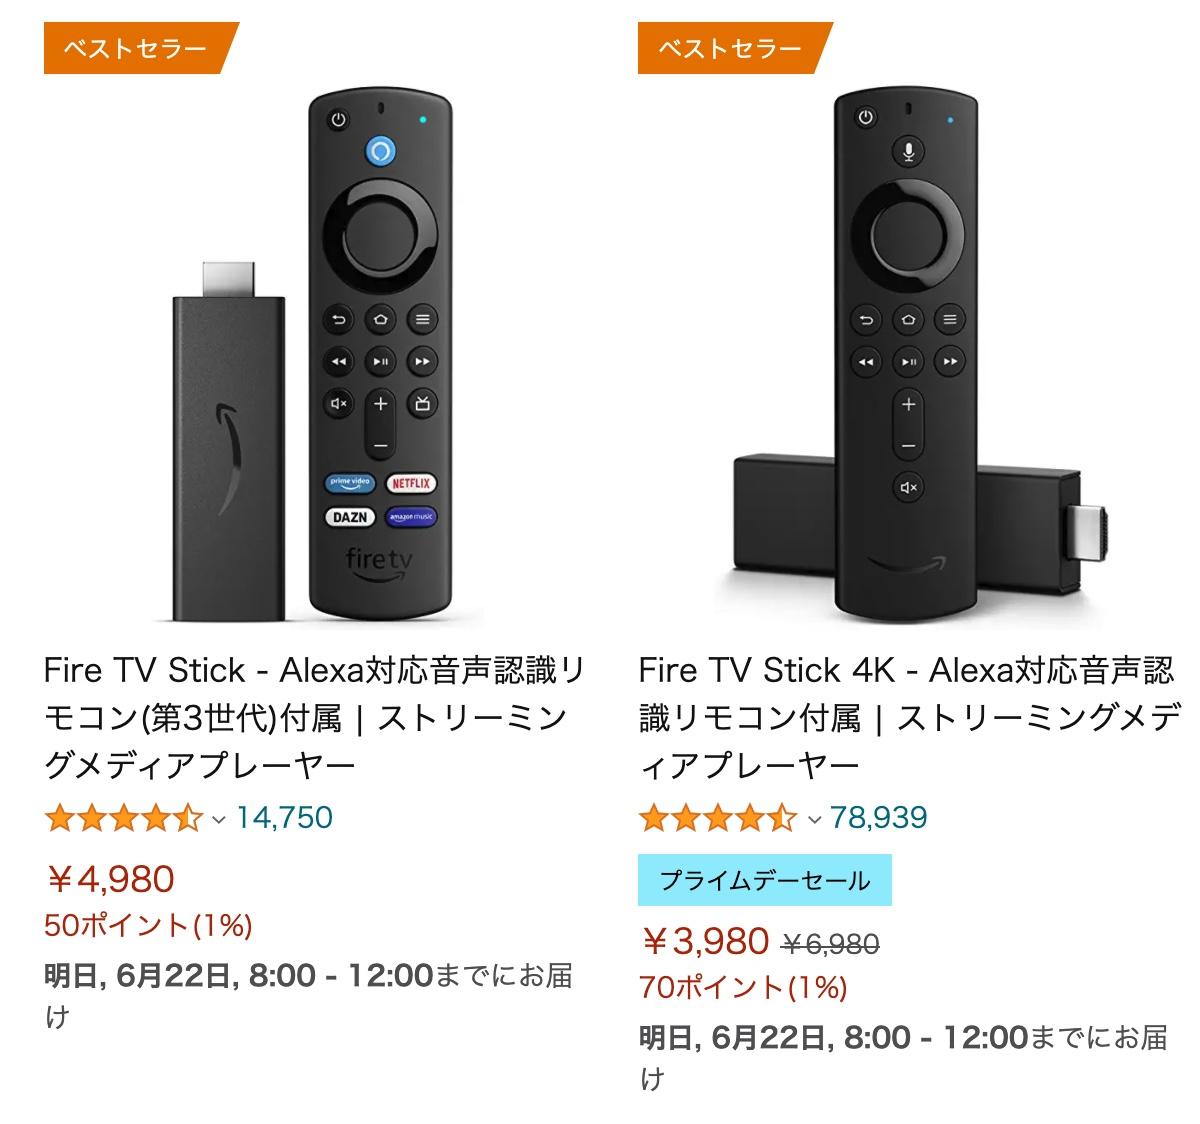 Fire TV Stick - Alexa3世代) - forstec.com